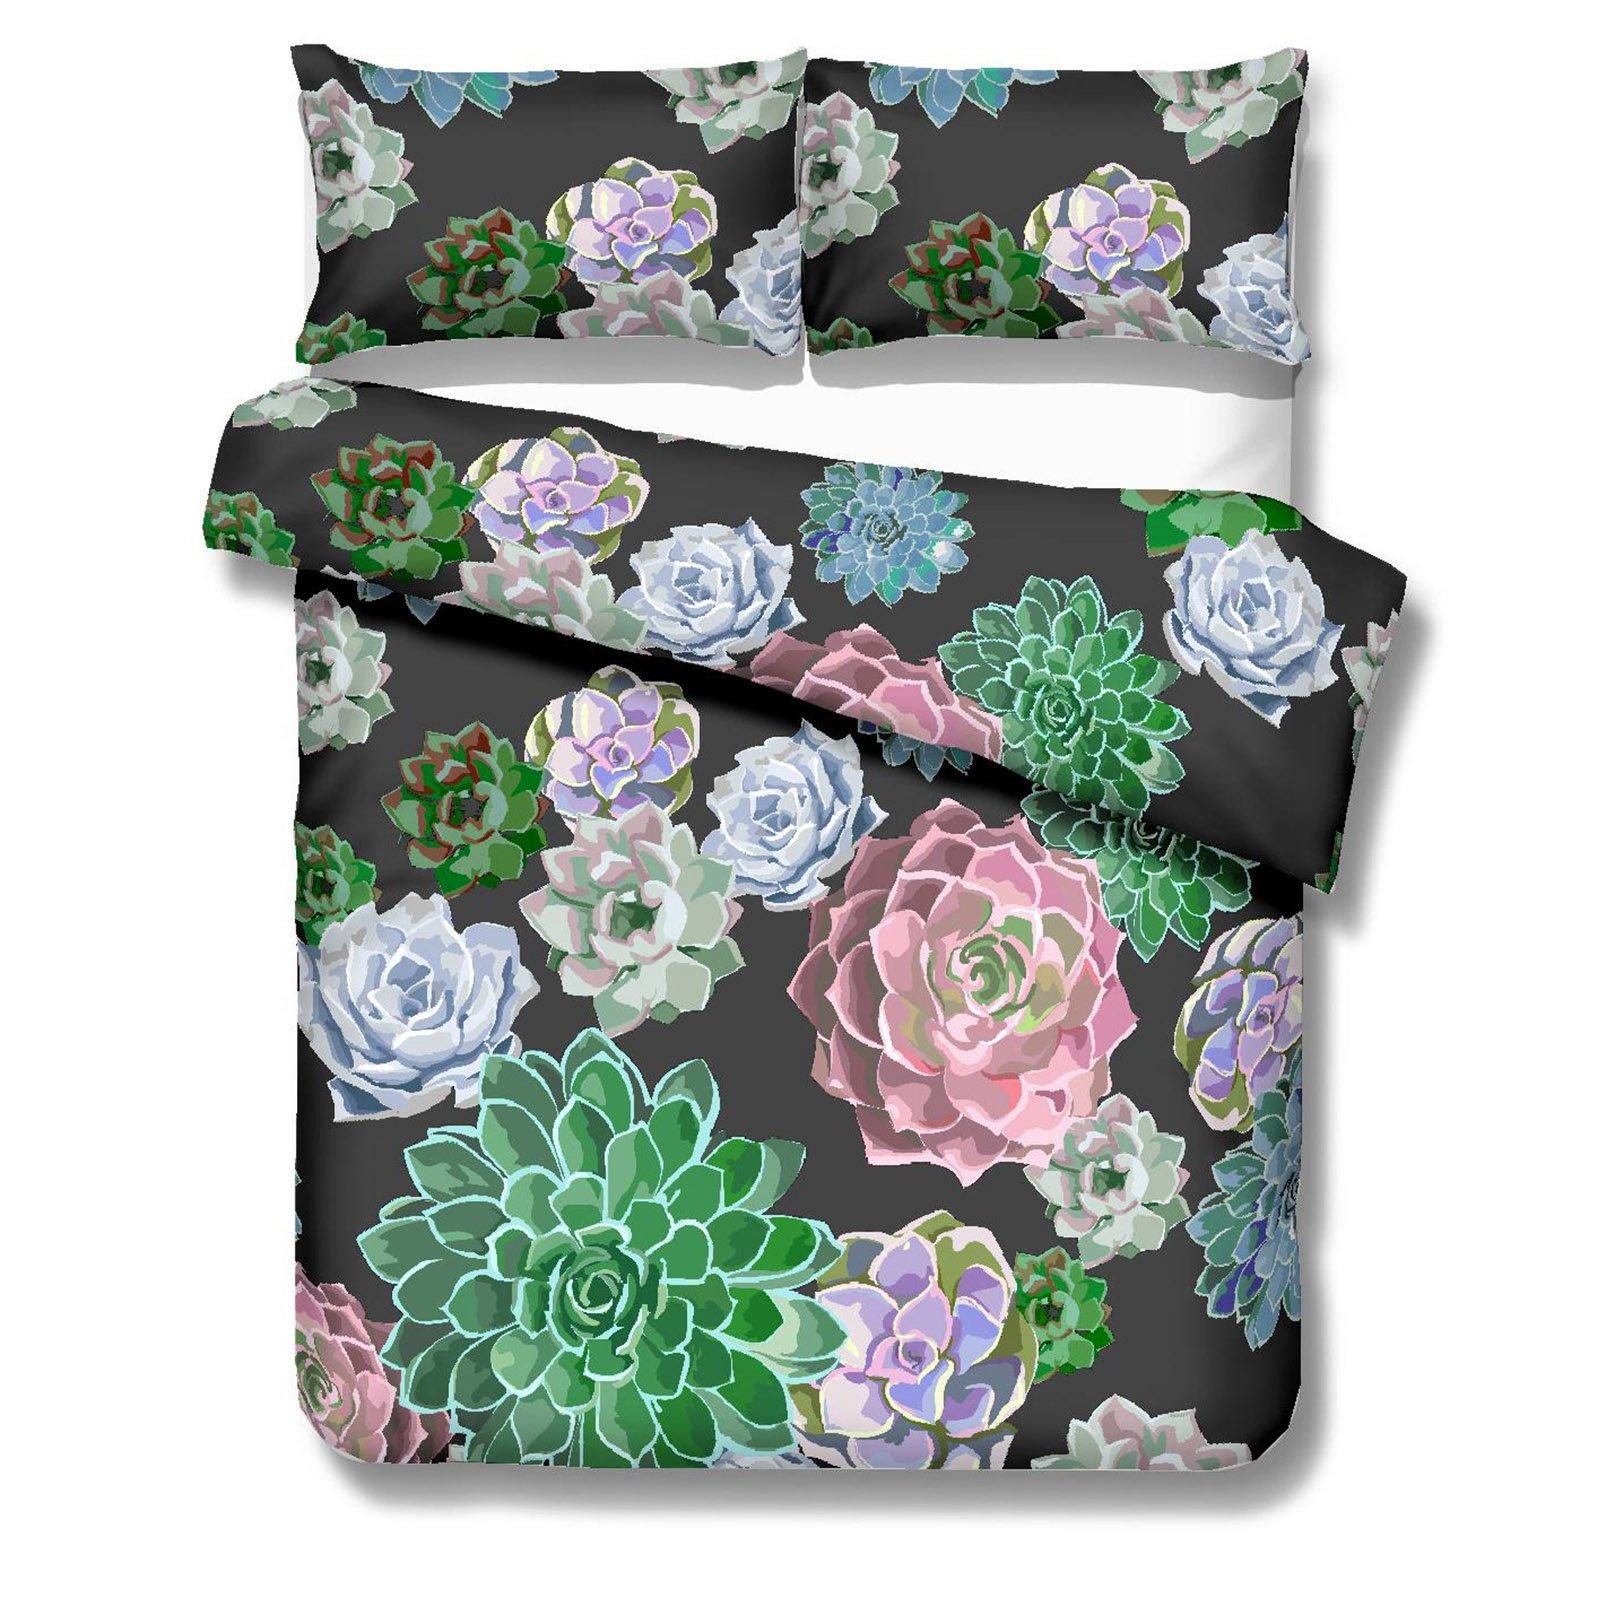 3D Succulent Plants 135 Bed Pillowcases Quilt Wallpaper AJ Wallpaper 